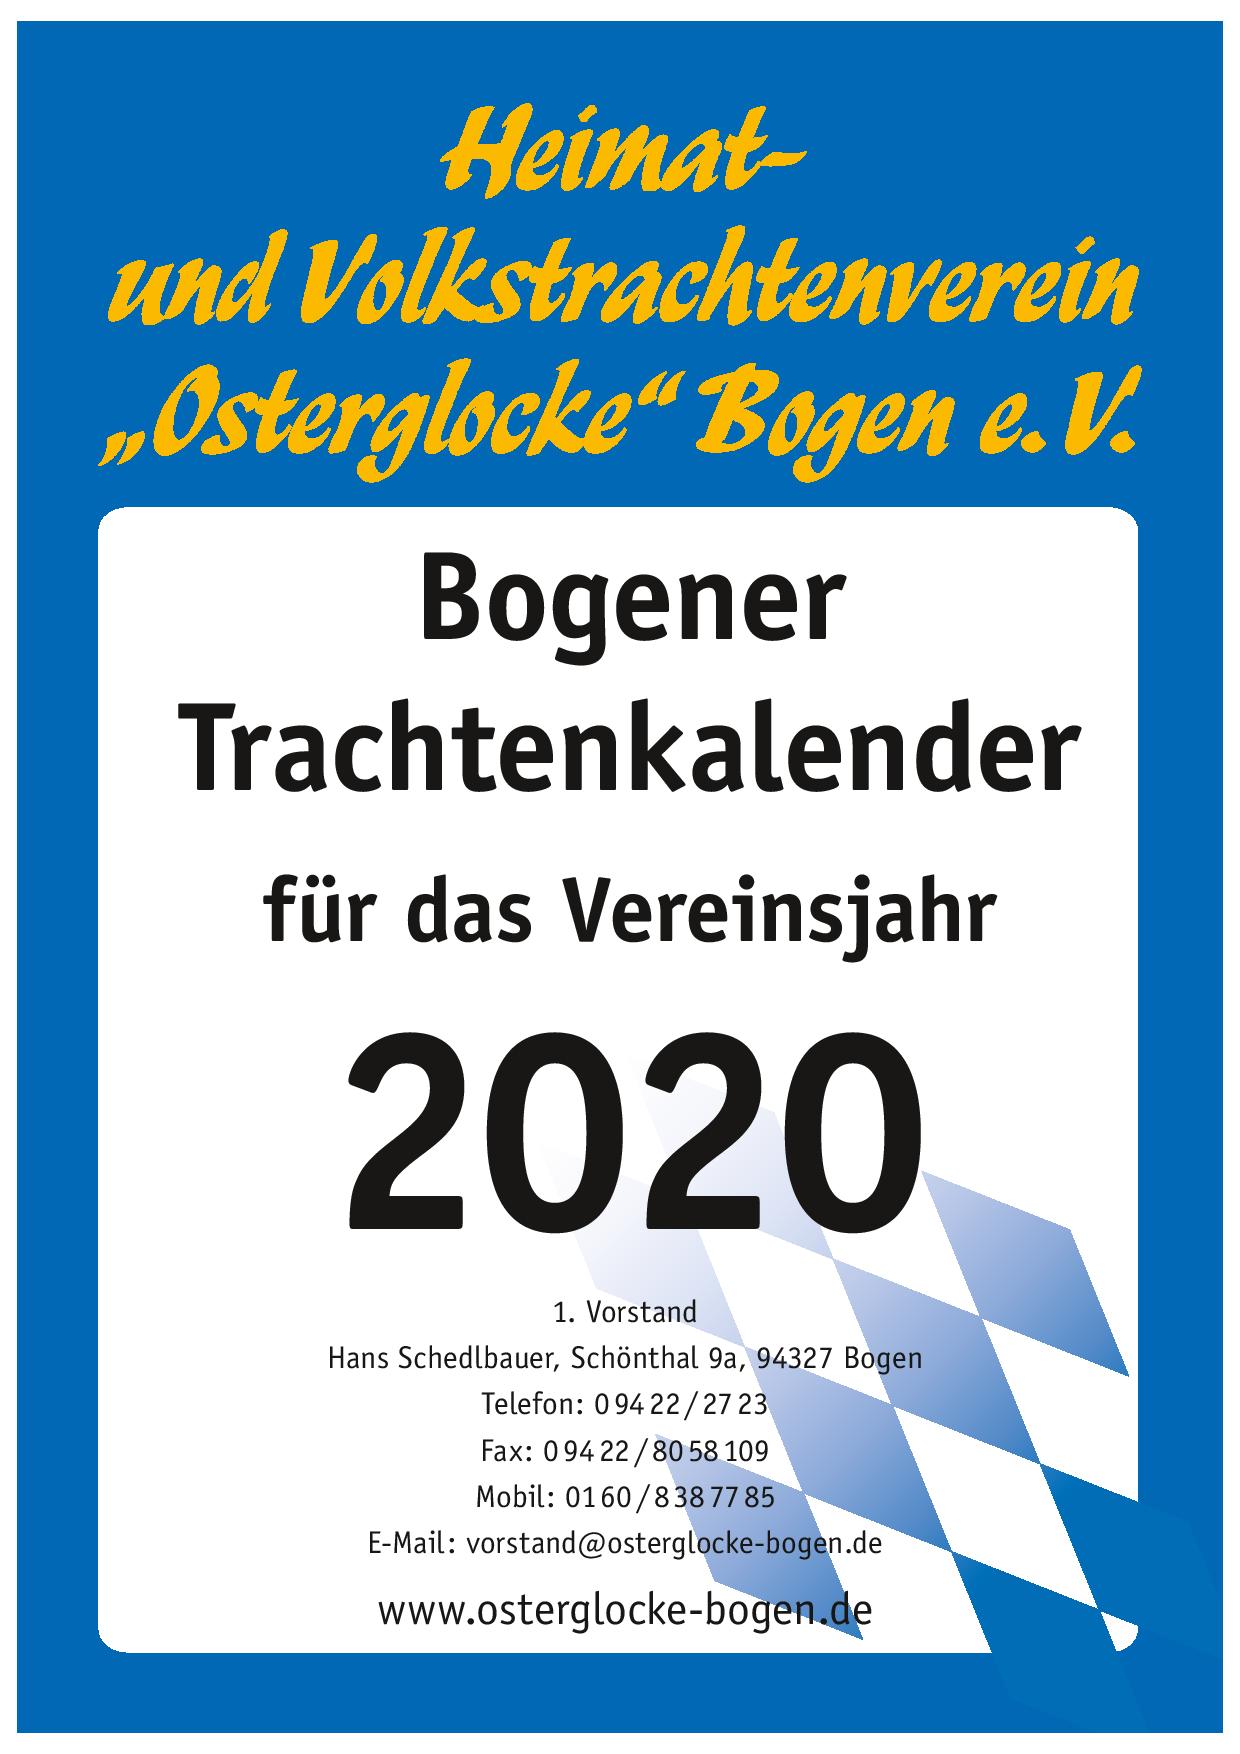 Bogener Trachtenkalender 2020 (Deckblatt)